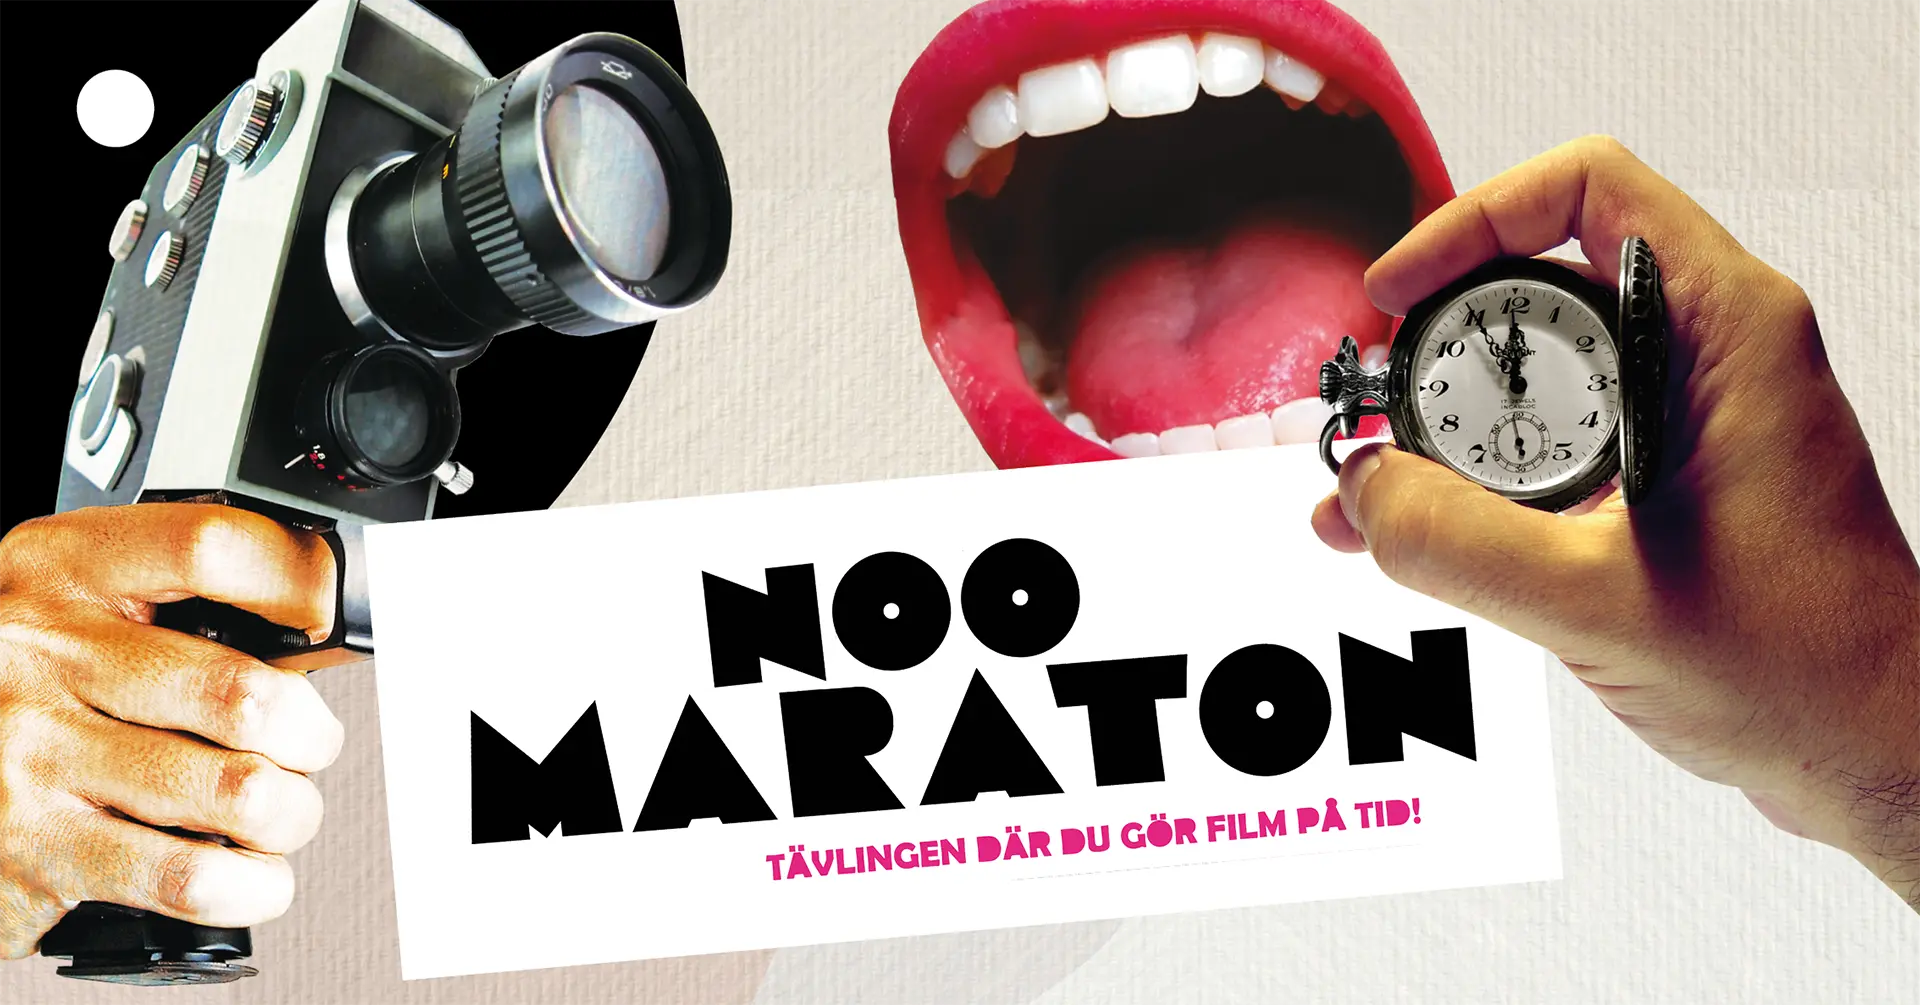 Kollage med texten Noomaraton - tävlingen där du gör film på tid.